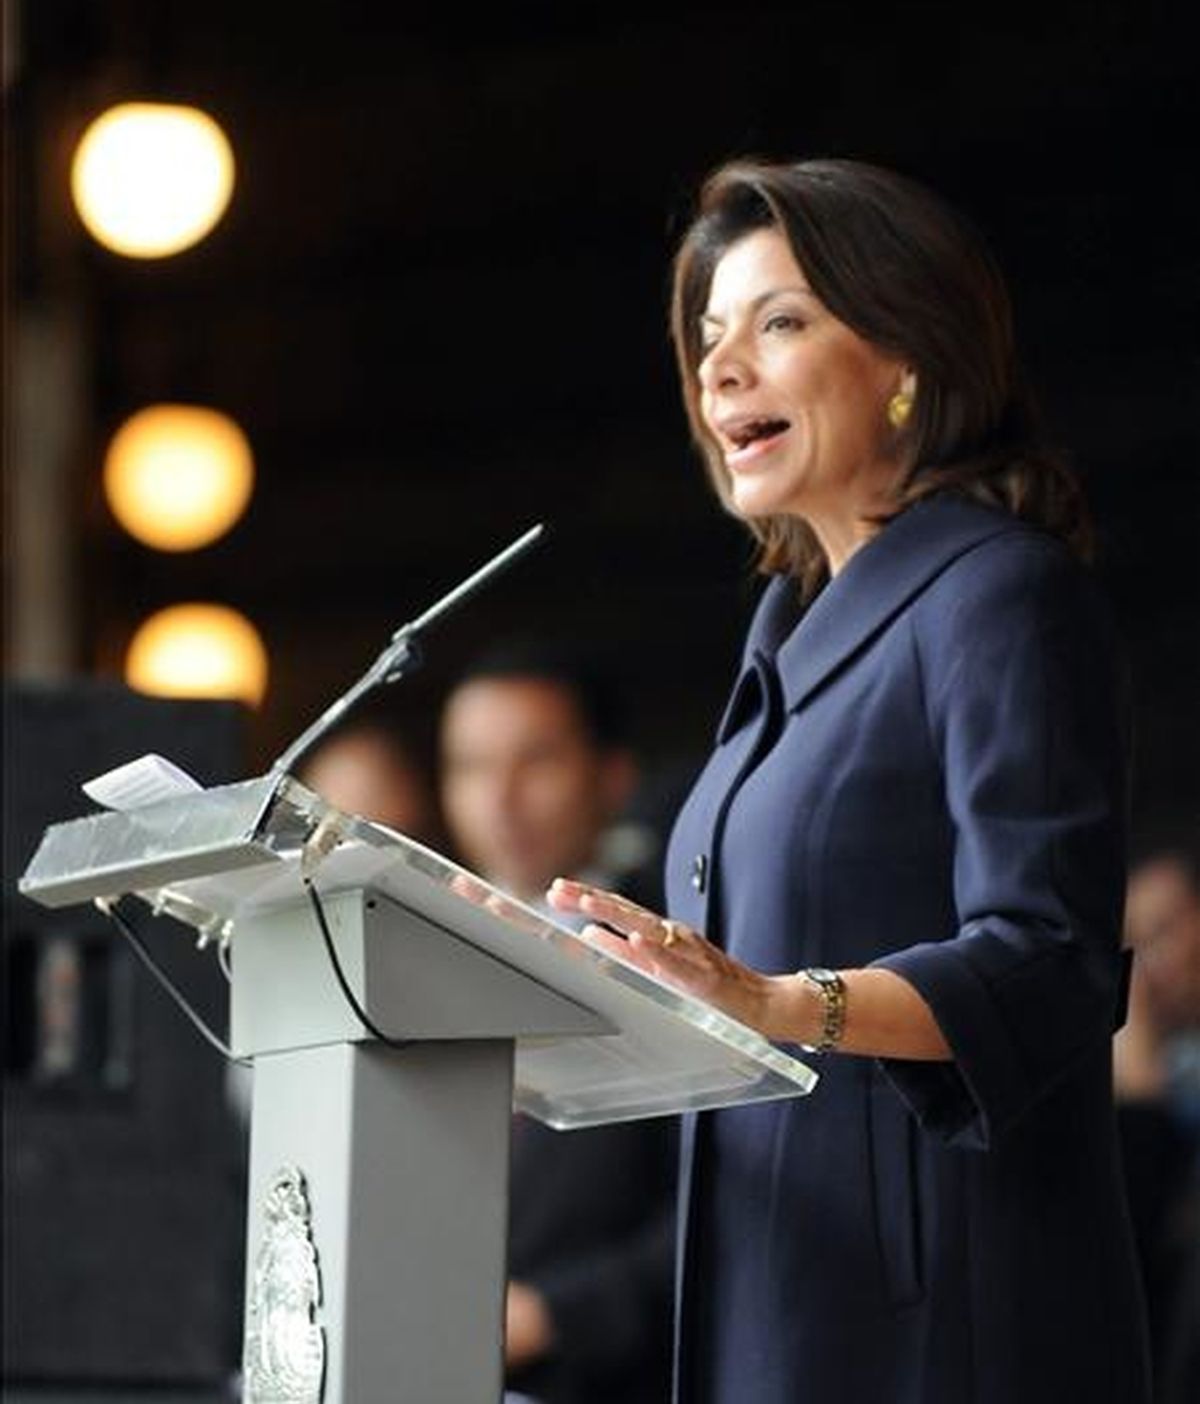 La presidenta de Costa Rica, Laura Chinchilla pronuncia un discurso este 1 de diciembre durante los actos de conmemoración del 62 aniversario de la abolición del Ejército costarricense, en San José, Costa Rica. EFE